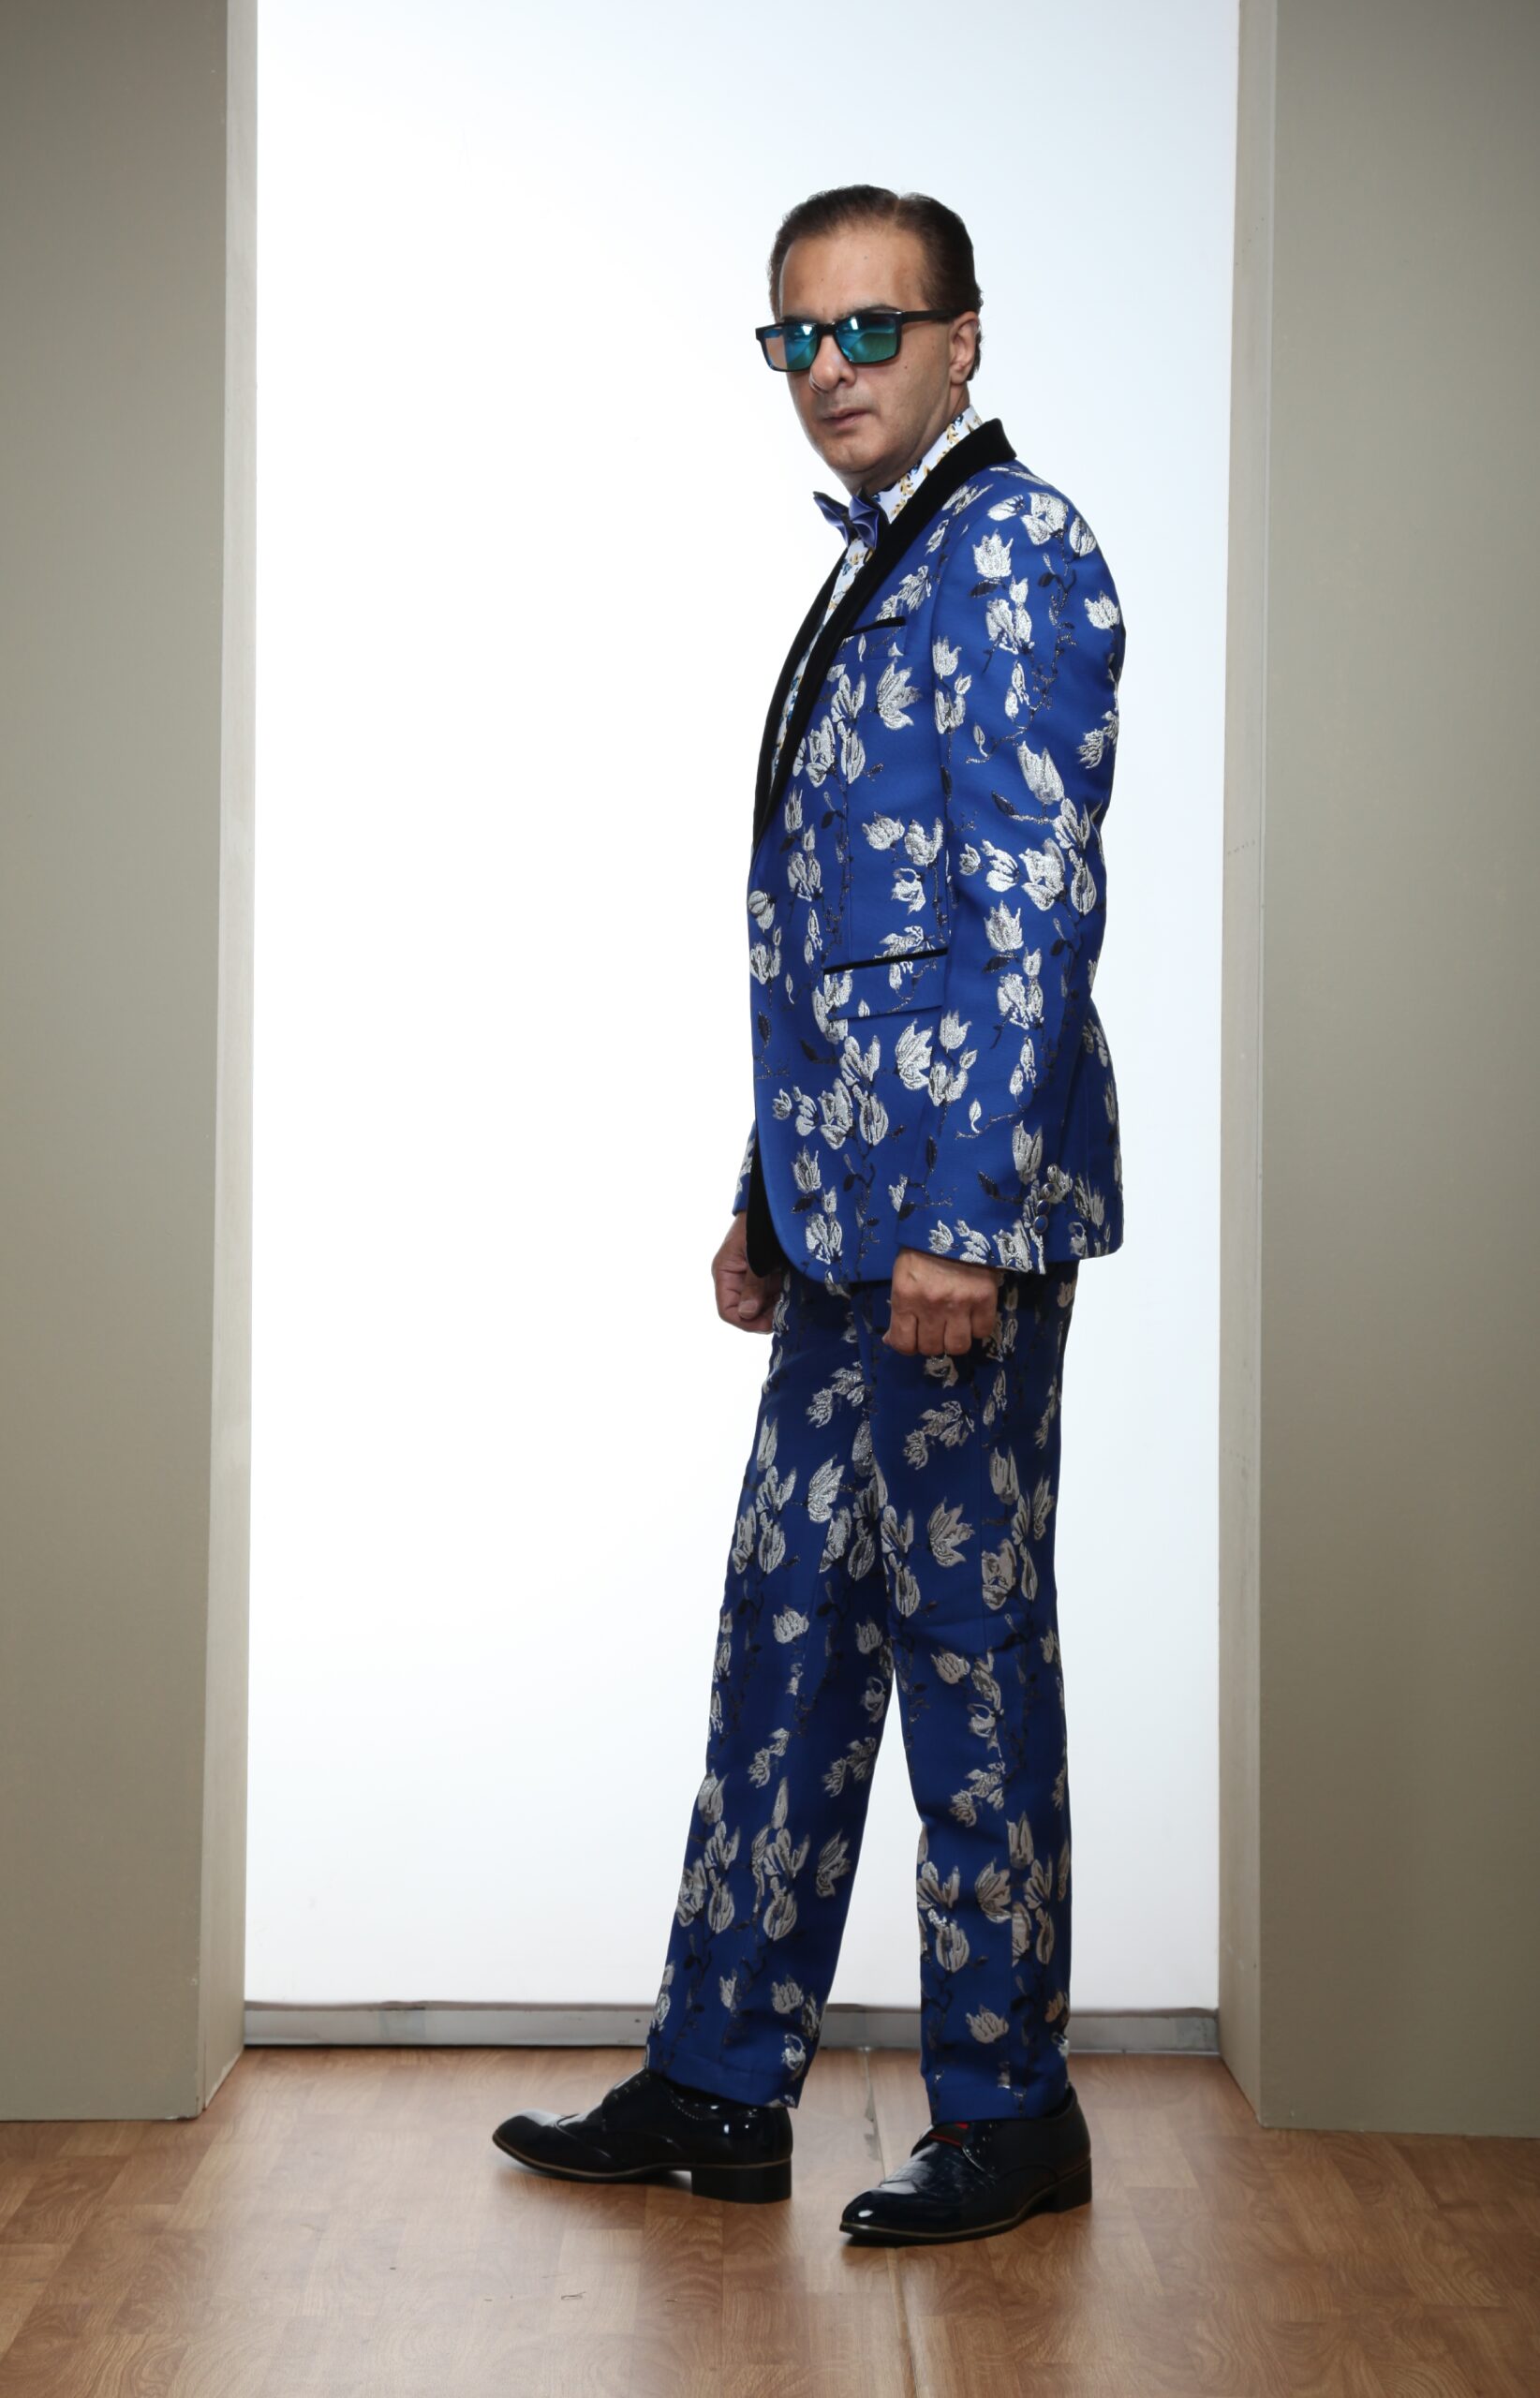 Mst 5003 02 Rent Rental Hire Tuxedo Suit Black Tie Suit Designer Suits Shop Tailor